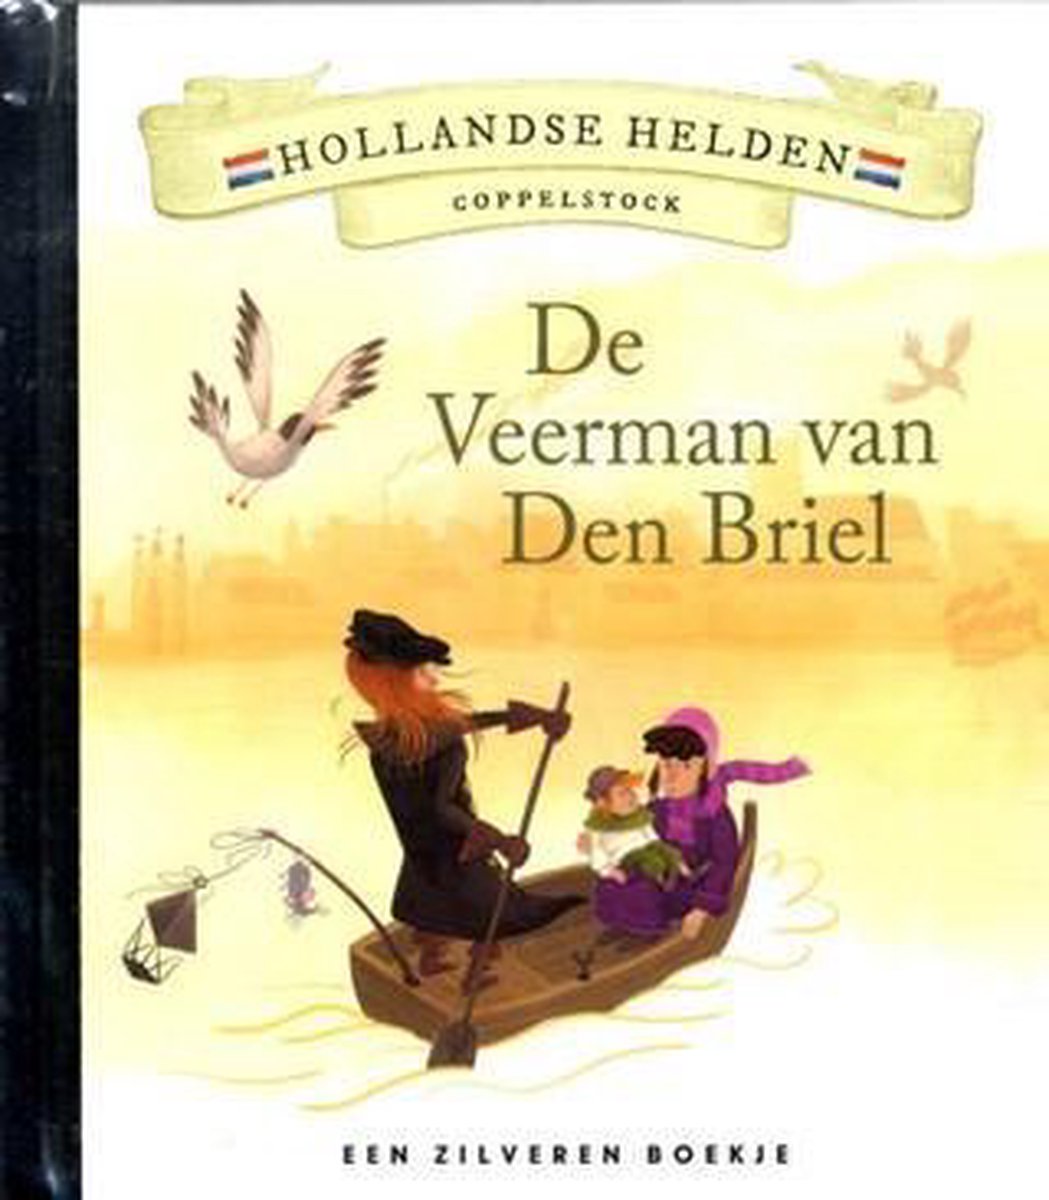 Hollandse Helden 9 - Coppelstock - Zilveren boekje - De Veerman van Den Briel